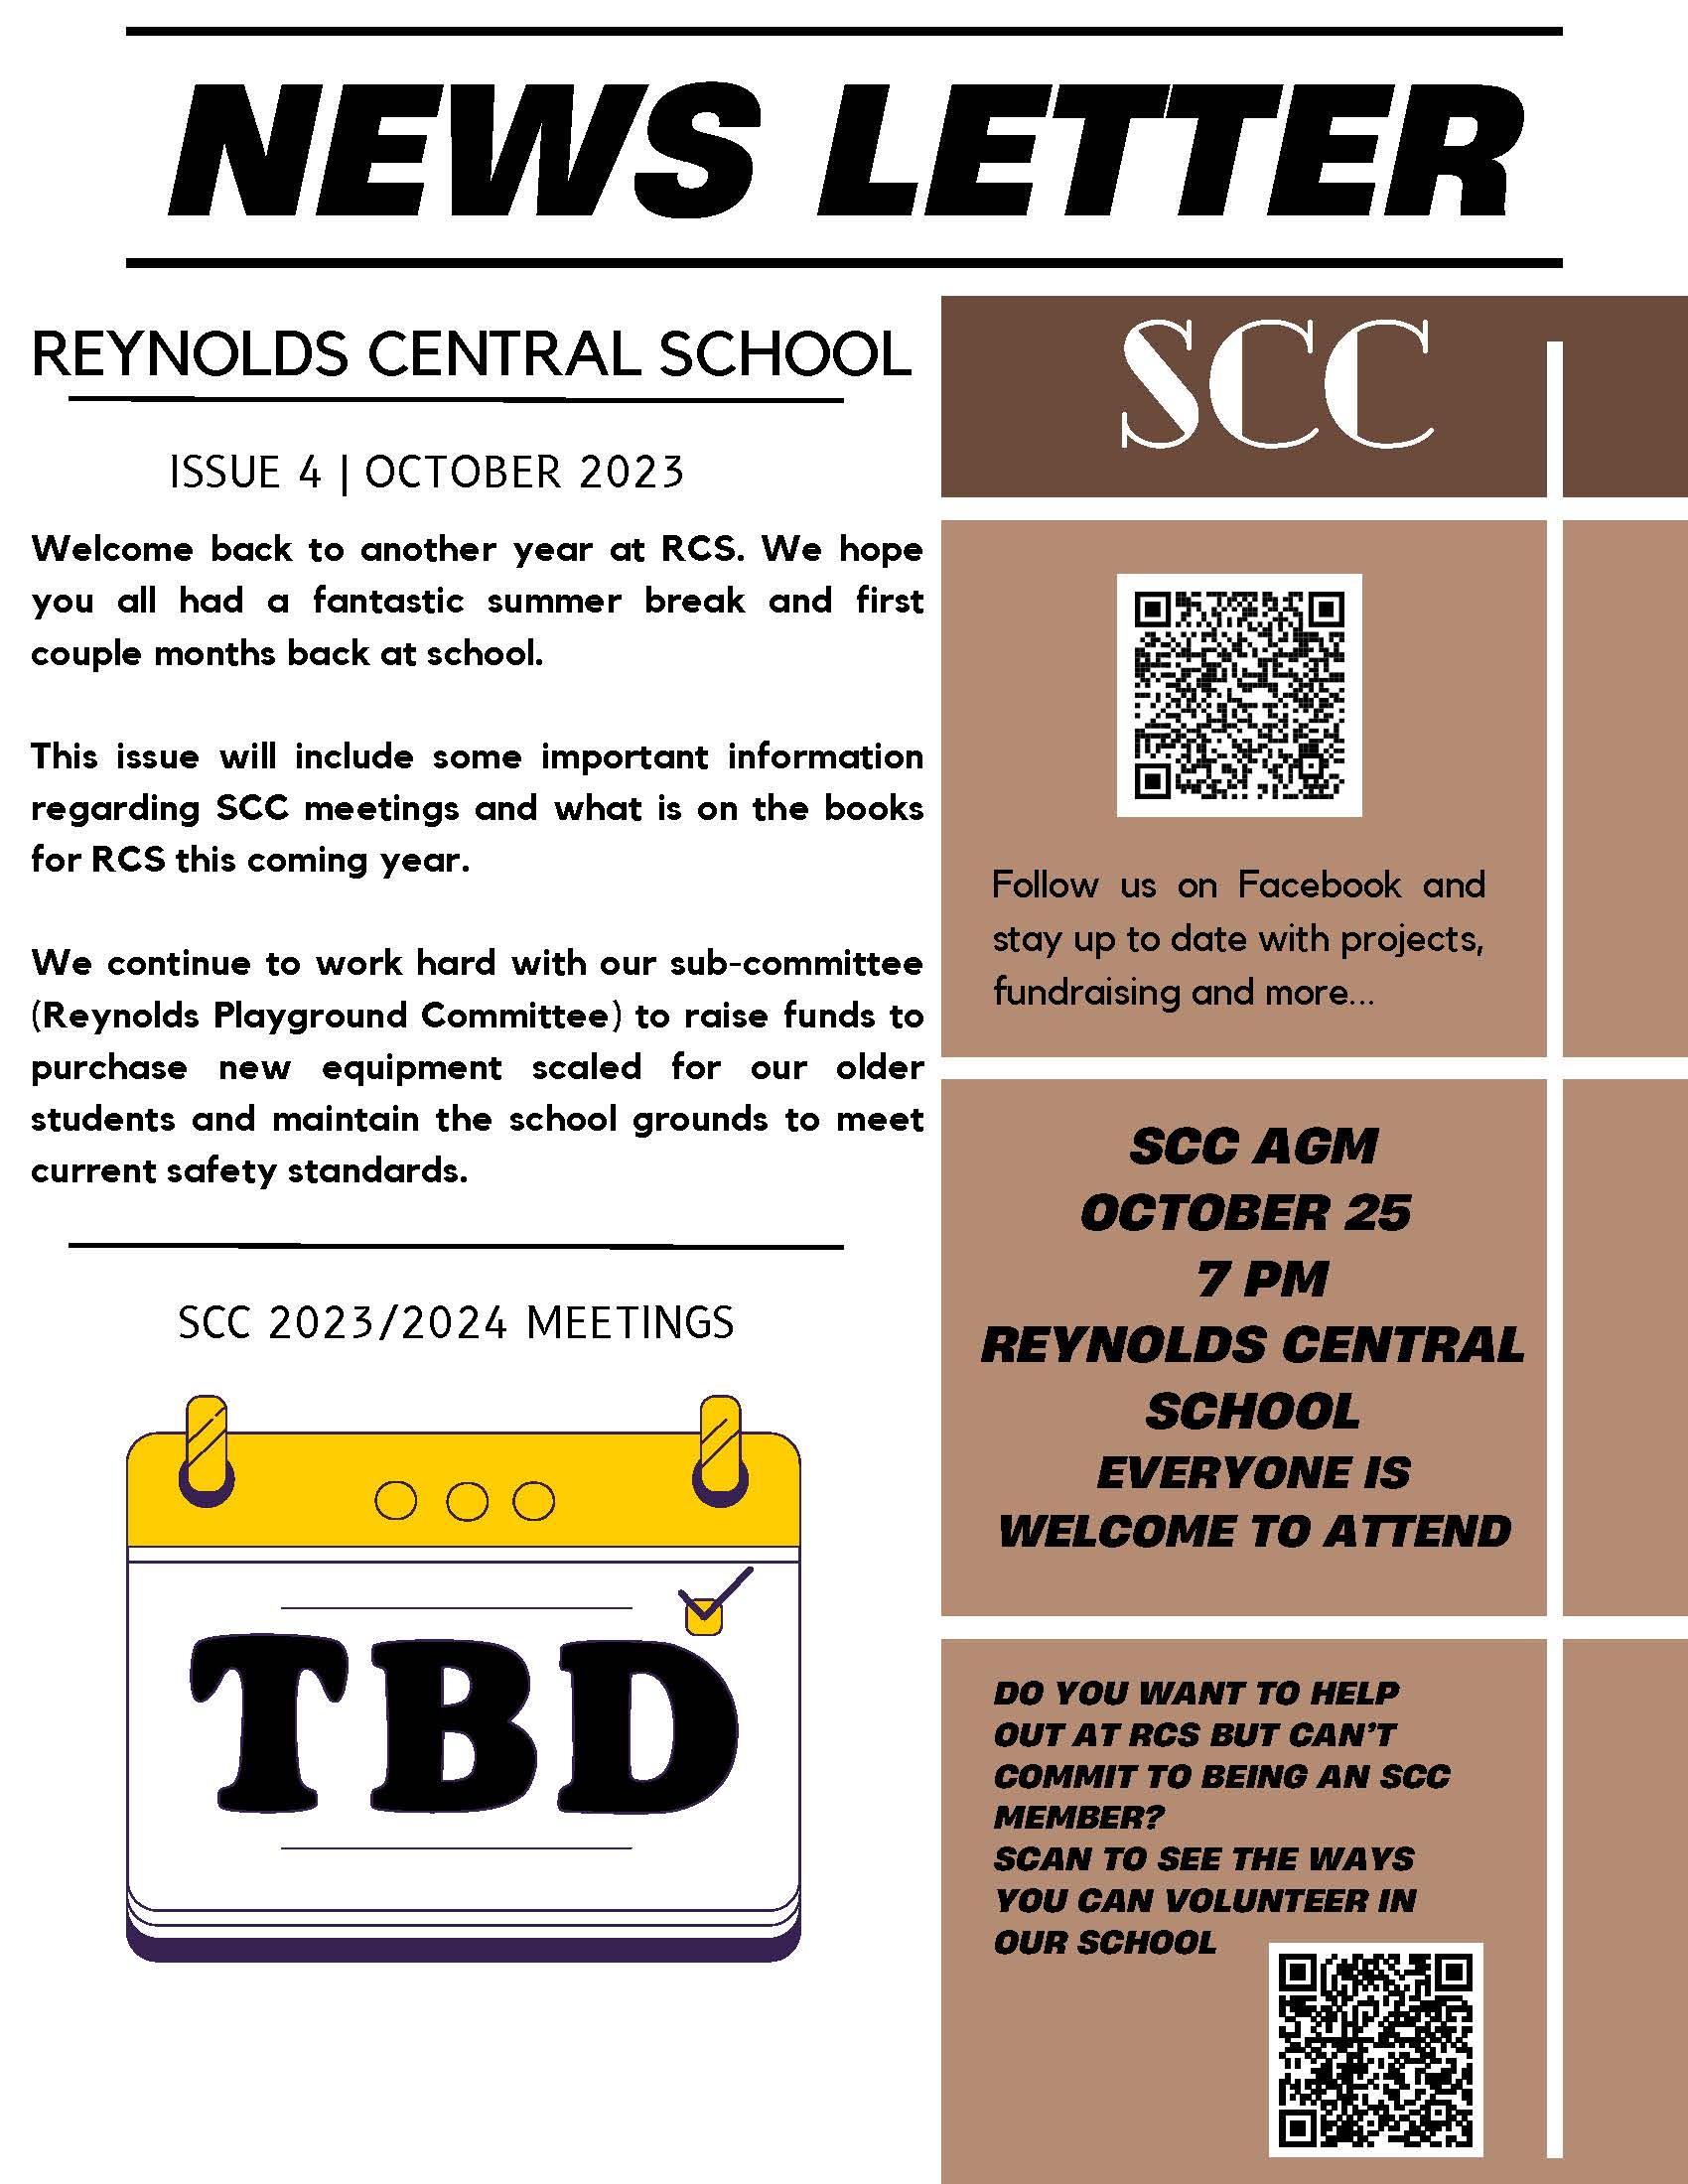 Reynolds SCC Newsletter October 2023